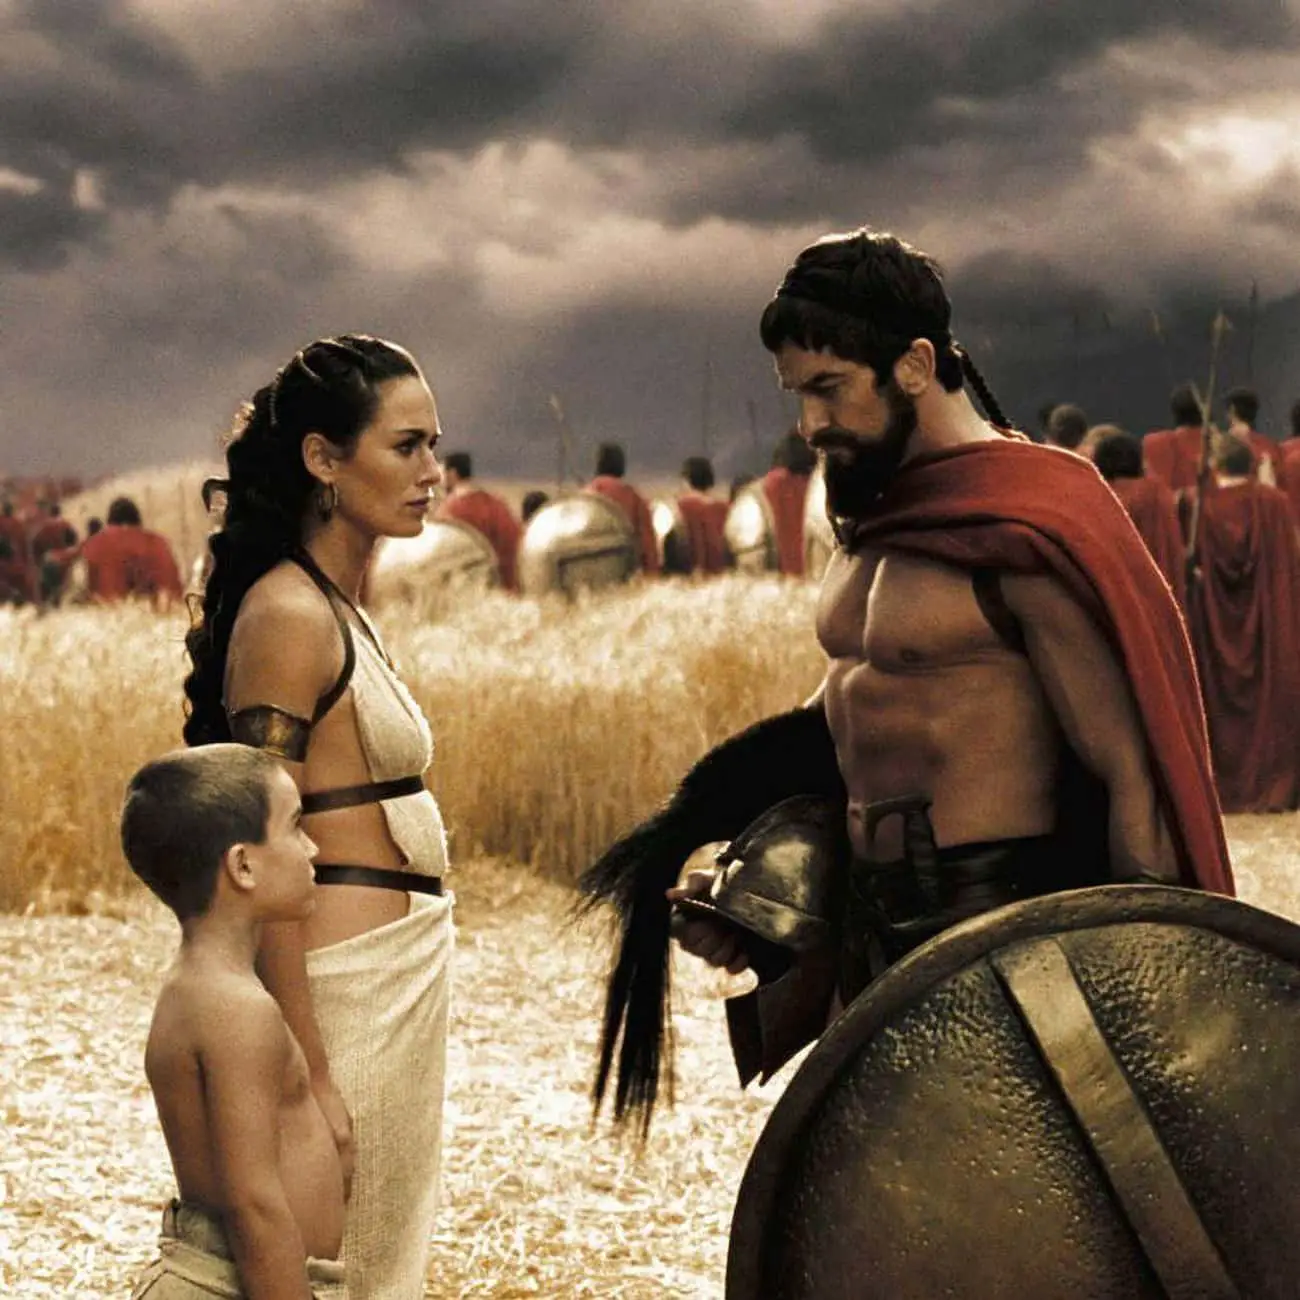 El destino de los viejos espartanos que ya no podían participar en las batallas.